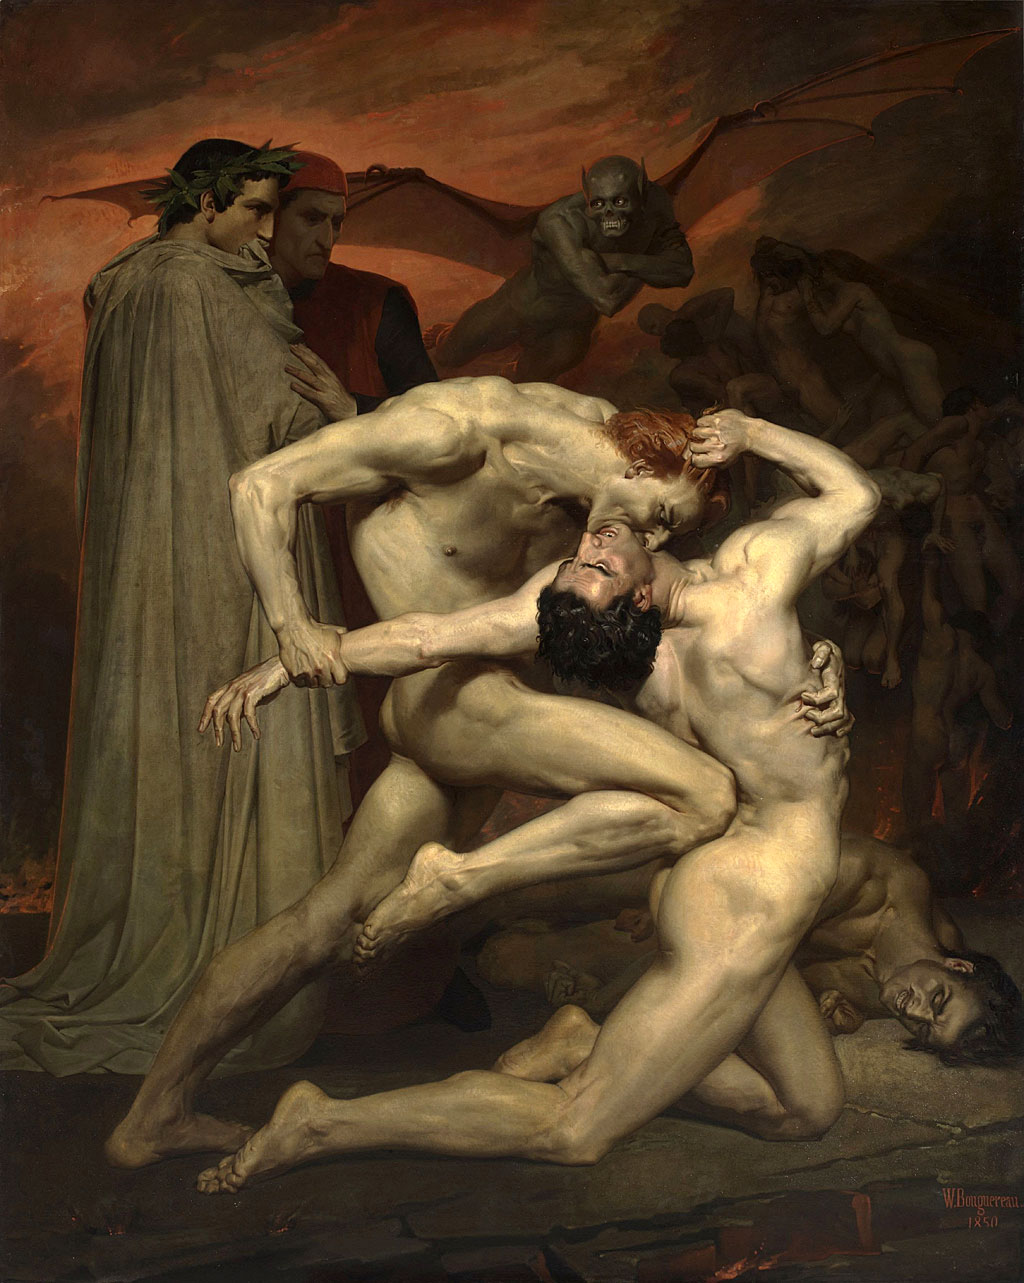 Dante y Virgilio en el infierno. Artista: Bouguereau, William-Adolphe (1825-1905)